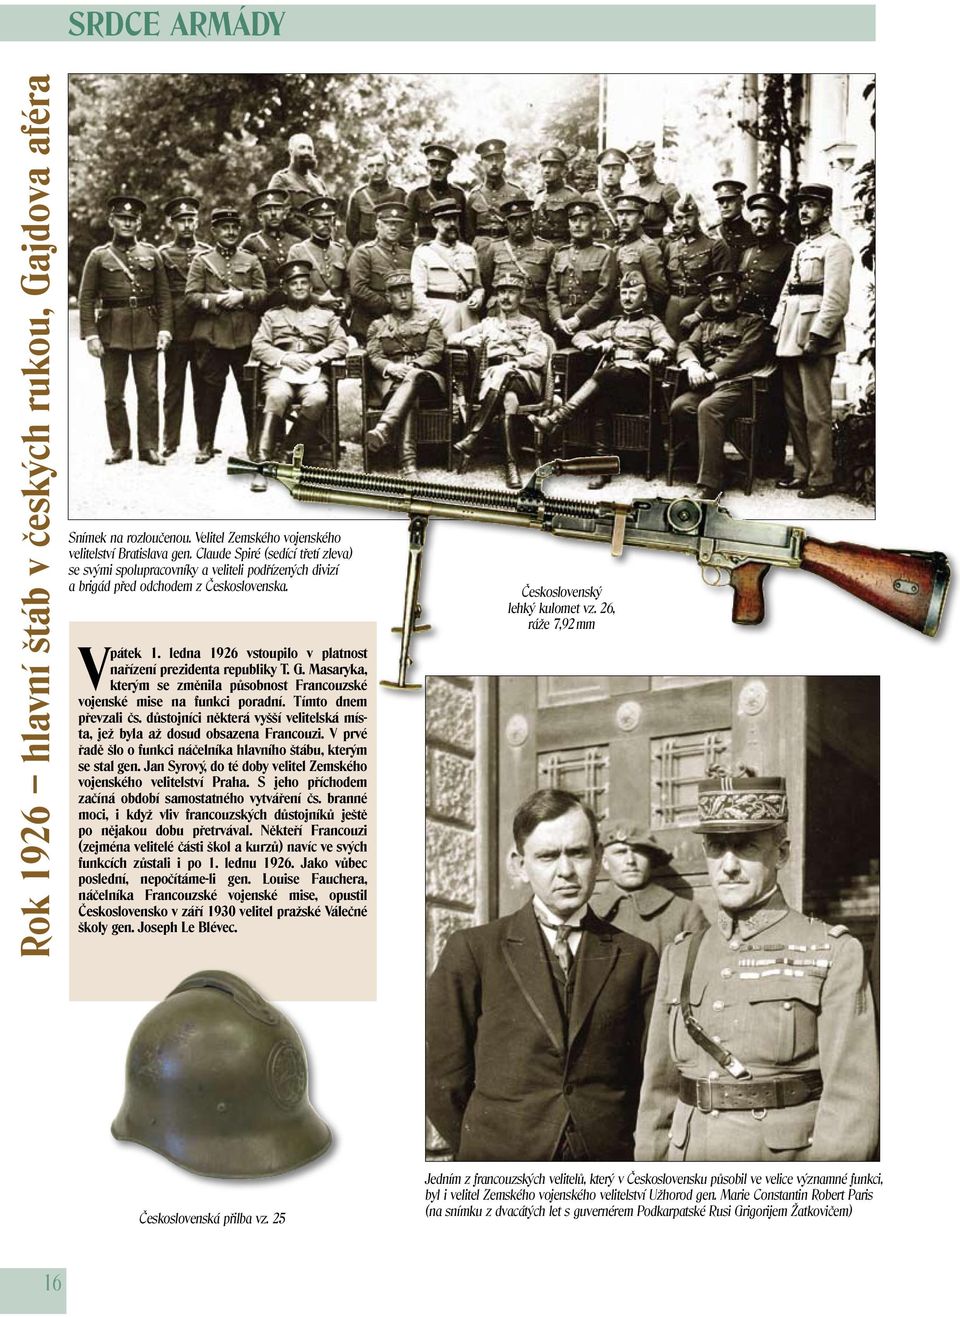 ledna 1926 vstoupilo v platnost nařízení prezidenta republiky T. G. Masaryka, kterým se změnila působnost Francouzské vojenské mise na funkci poradní. Tímto dnem převzali čs.